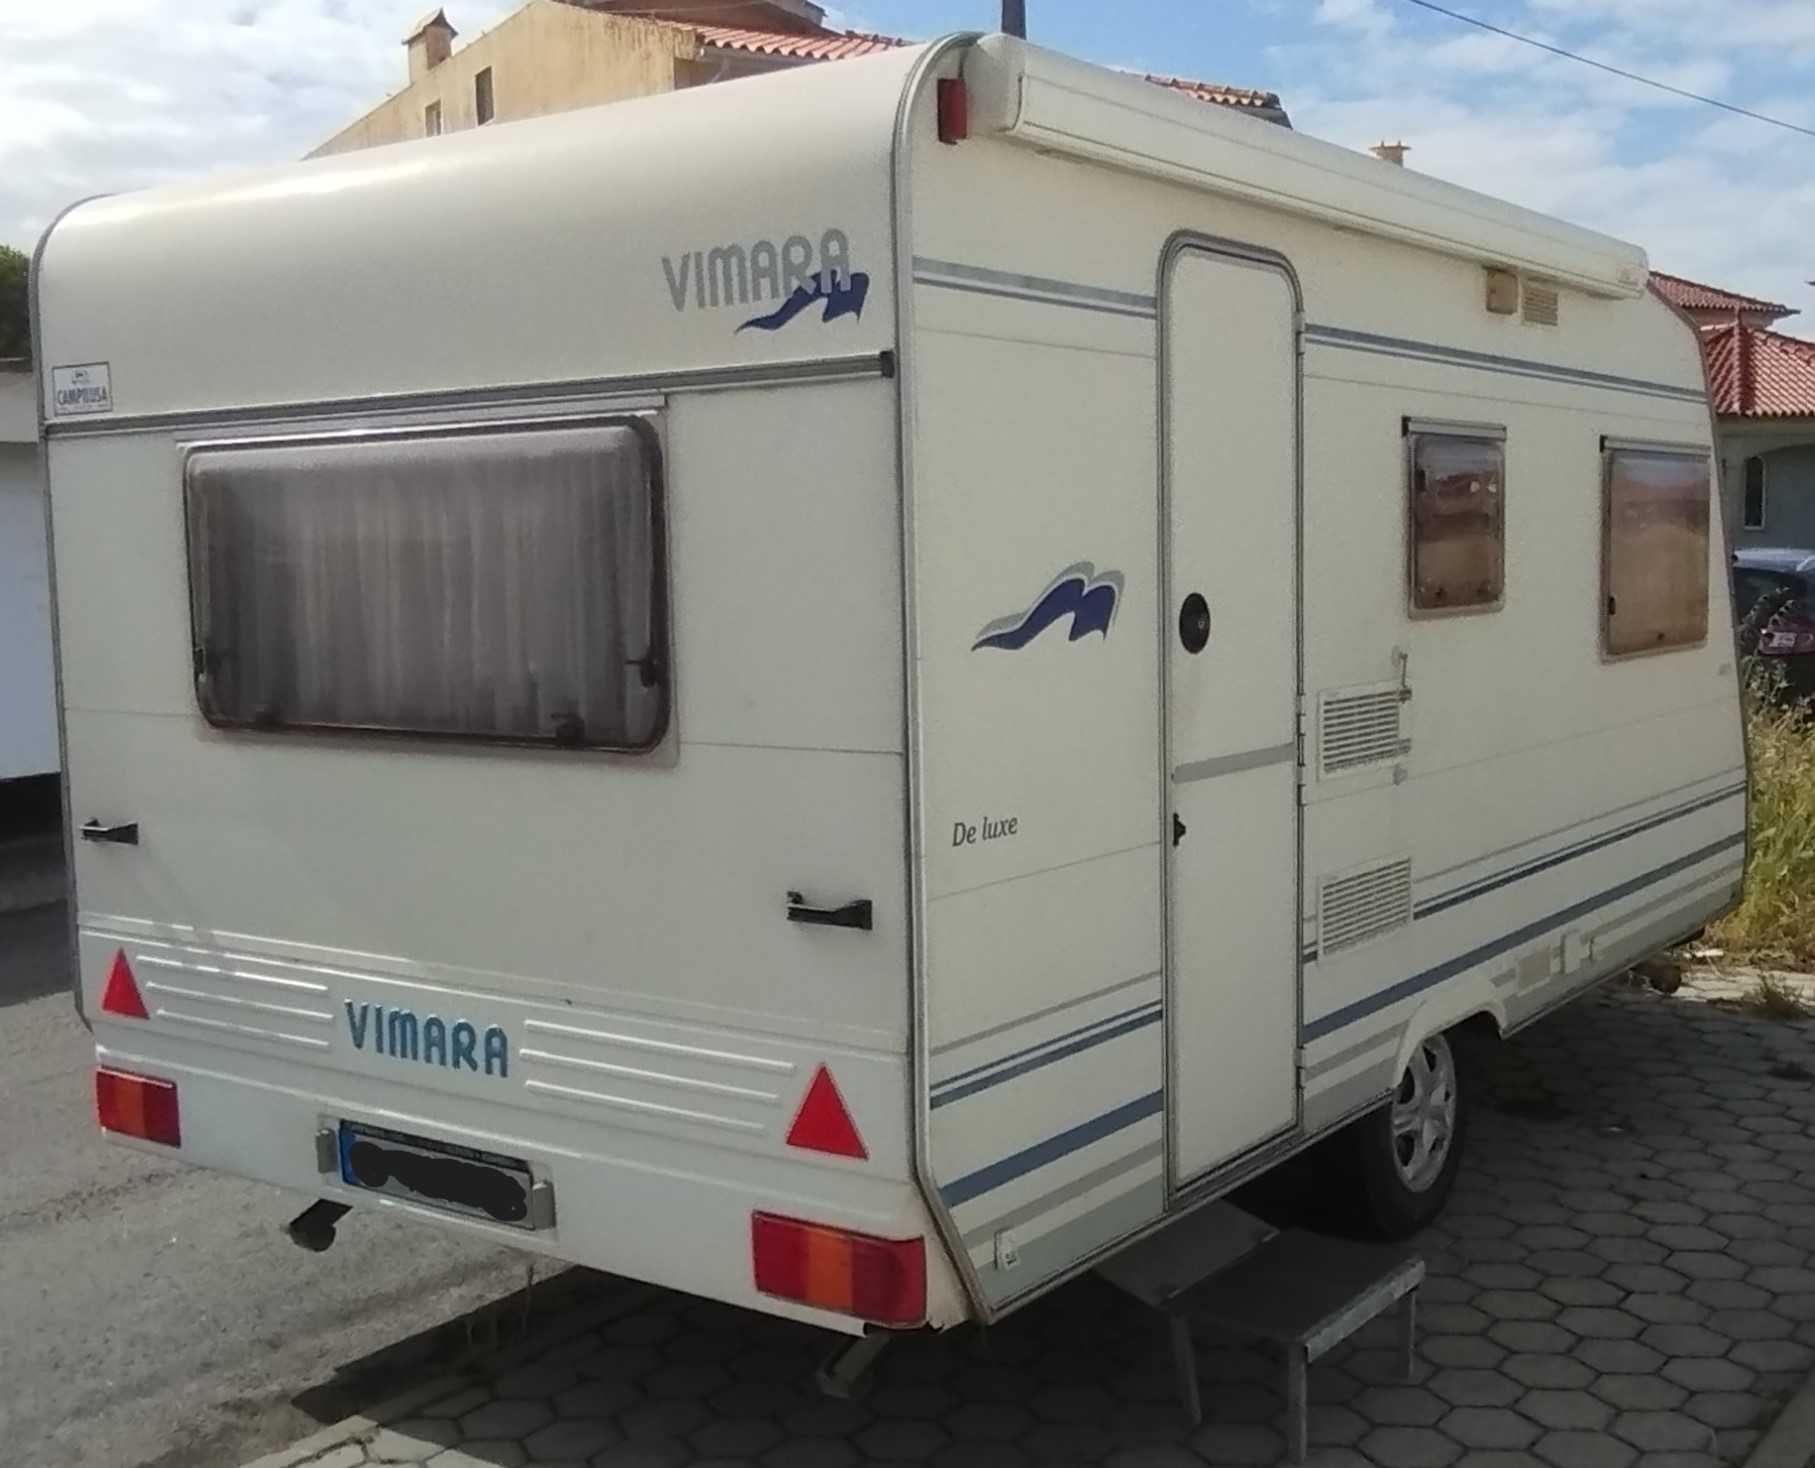 Caravana Vimara Deluxe 440D